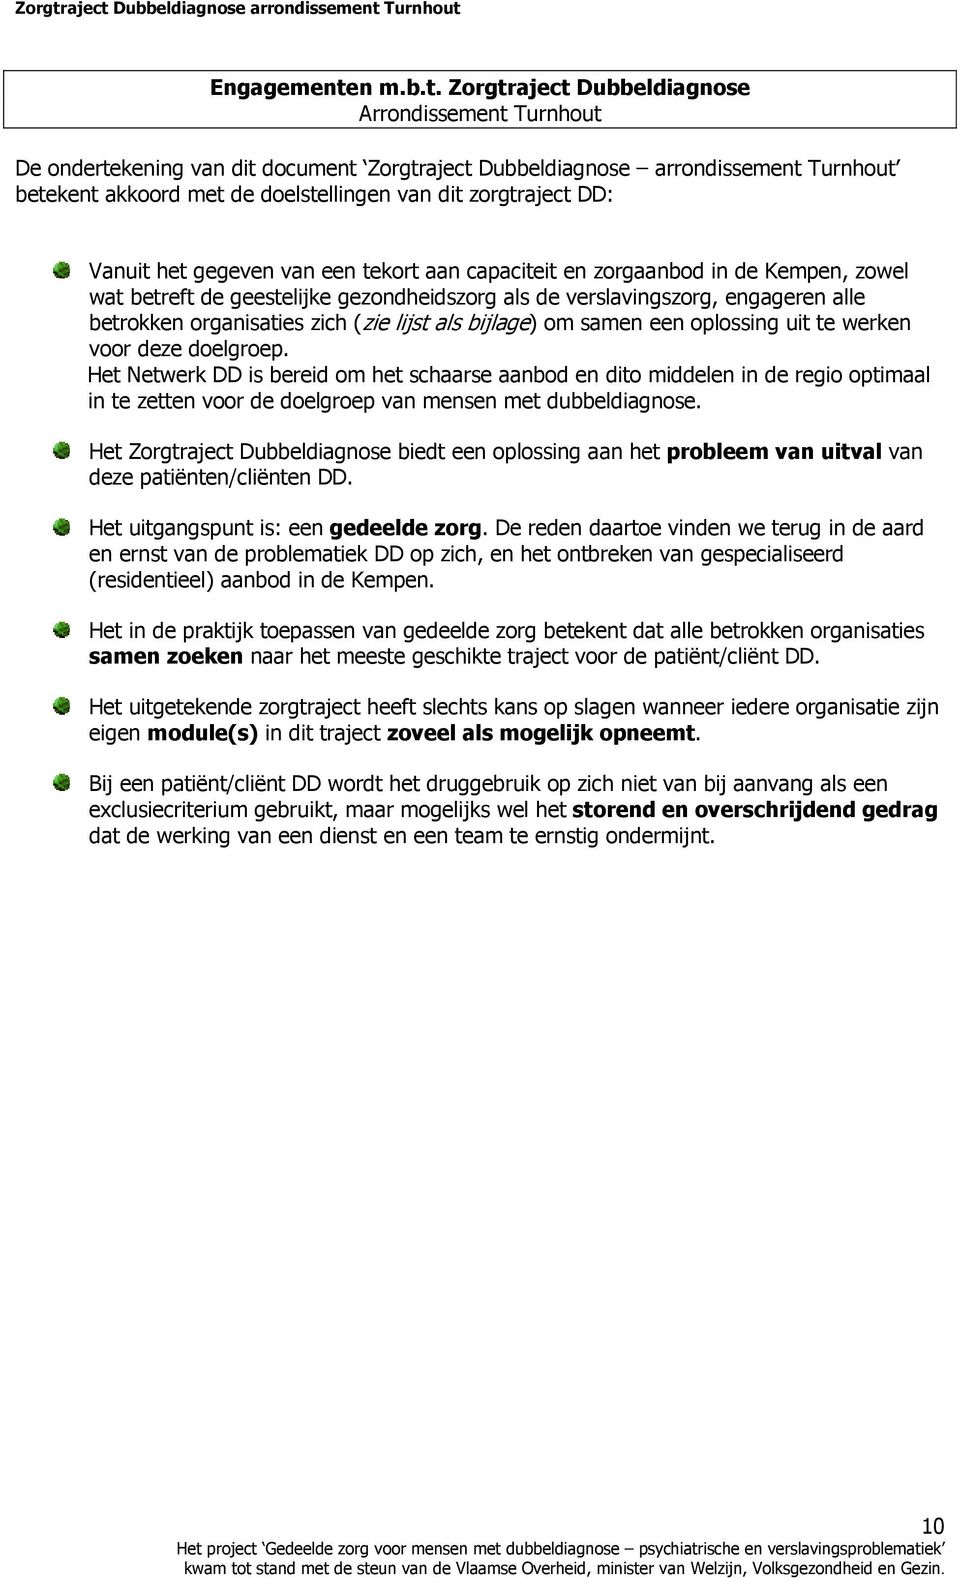 Zorgtraject Dubbeldiagnose Arrondissement Turnhout De ondertekening van dit document Zorgtraject Dubbeldiagnose arrondissement Turnhout betekent akkoord met de doelstellingen van dit zorgtraject DD: